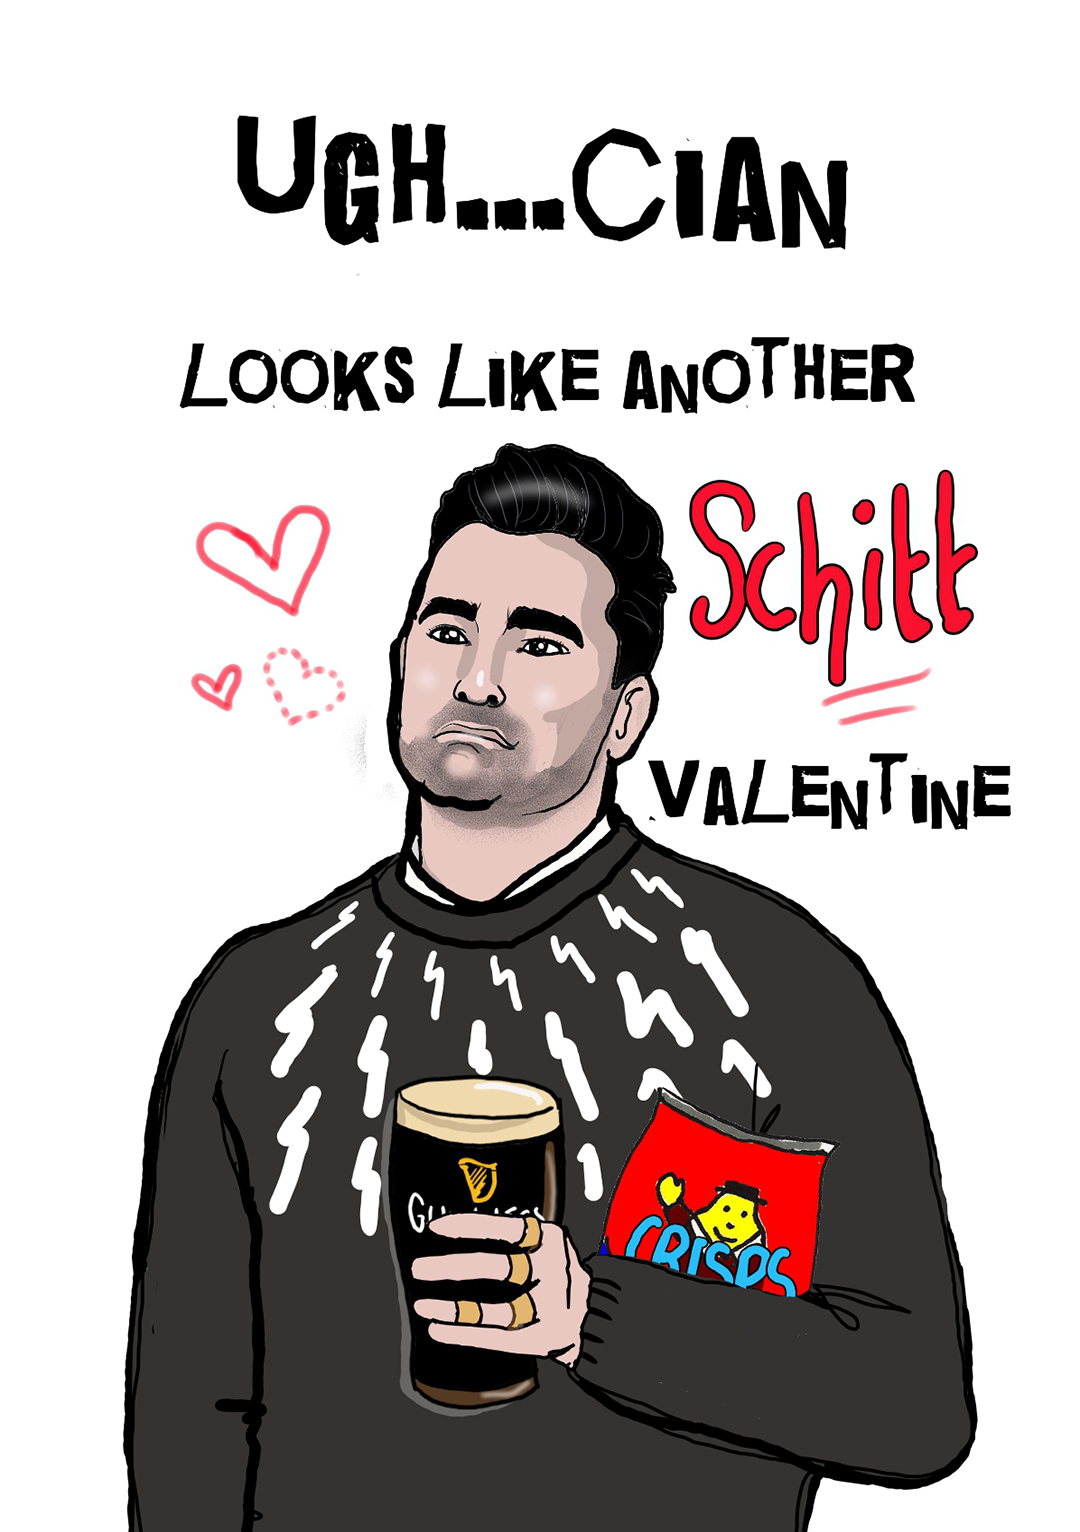 Looks Like Another Schitt Valentine - Valentine's Day Card